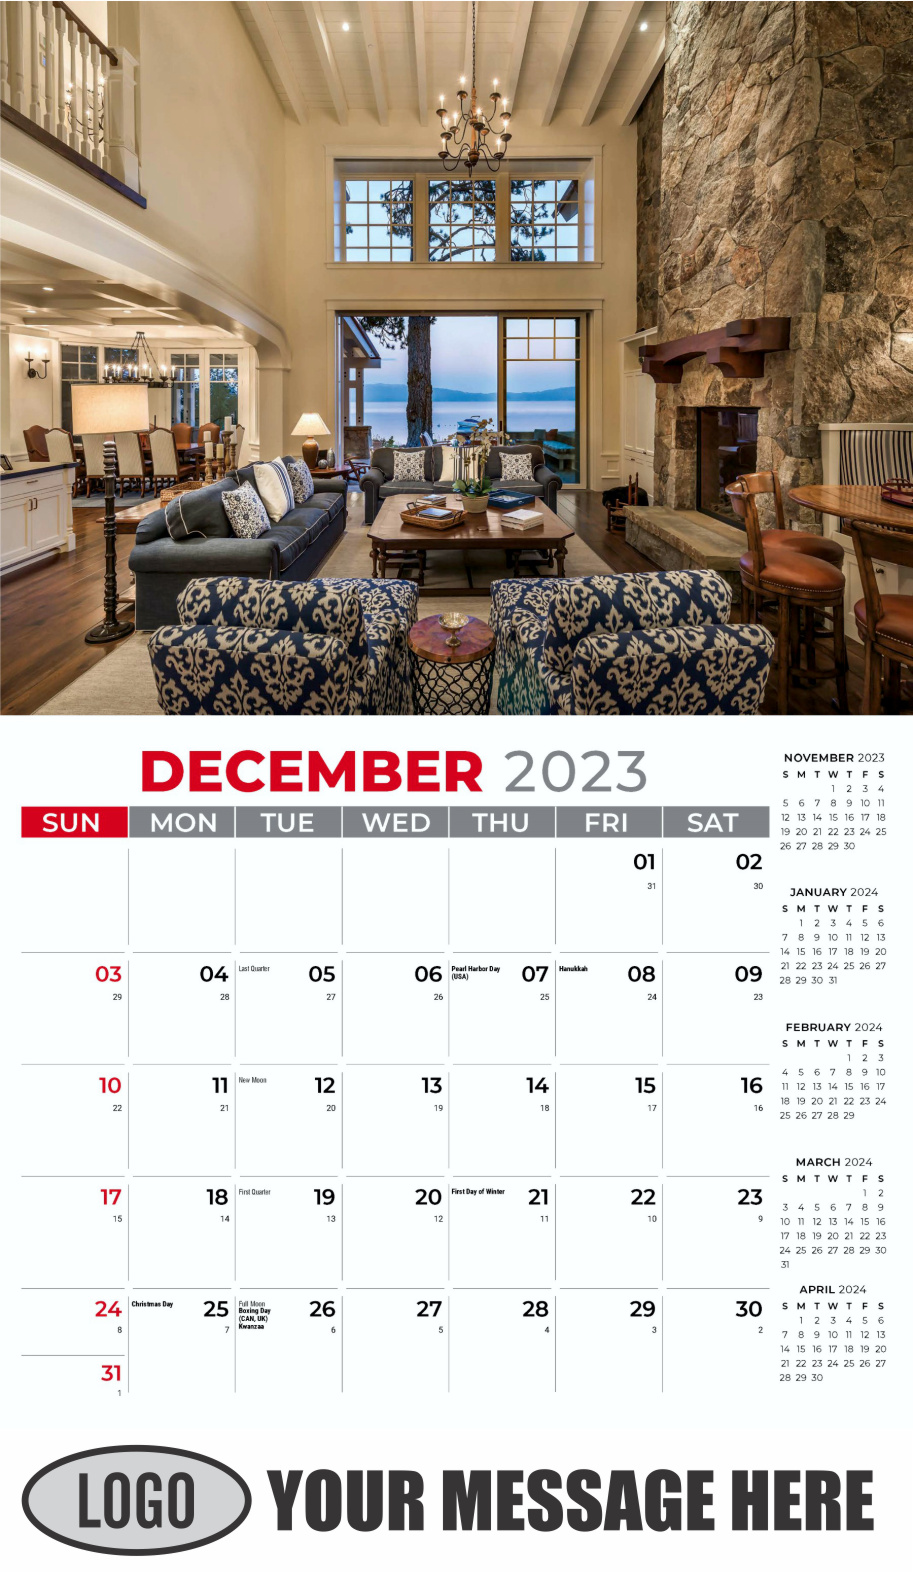 Decor and Design 2024 Interior Design Business Promotional Calendar - December_a